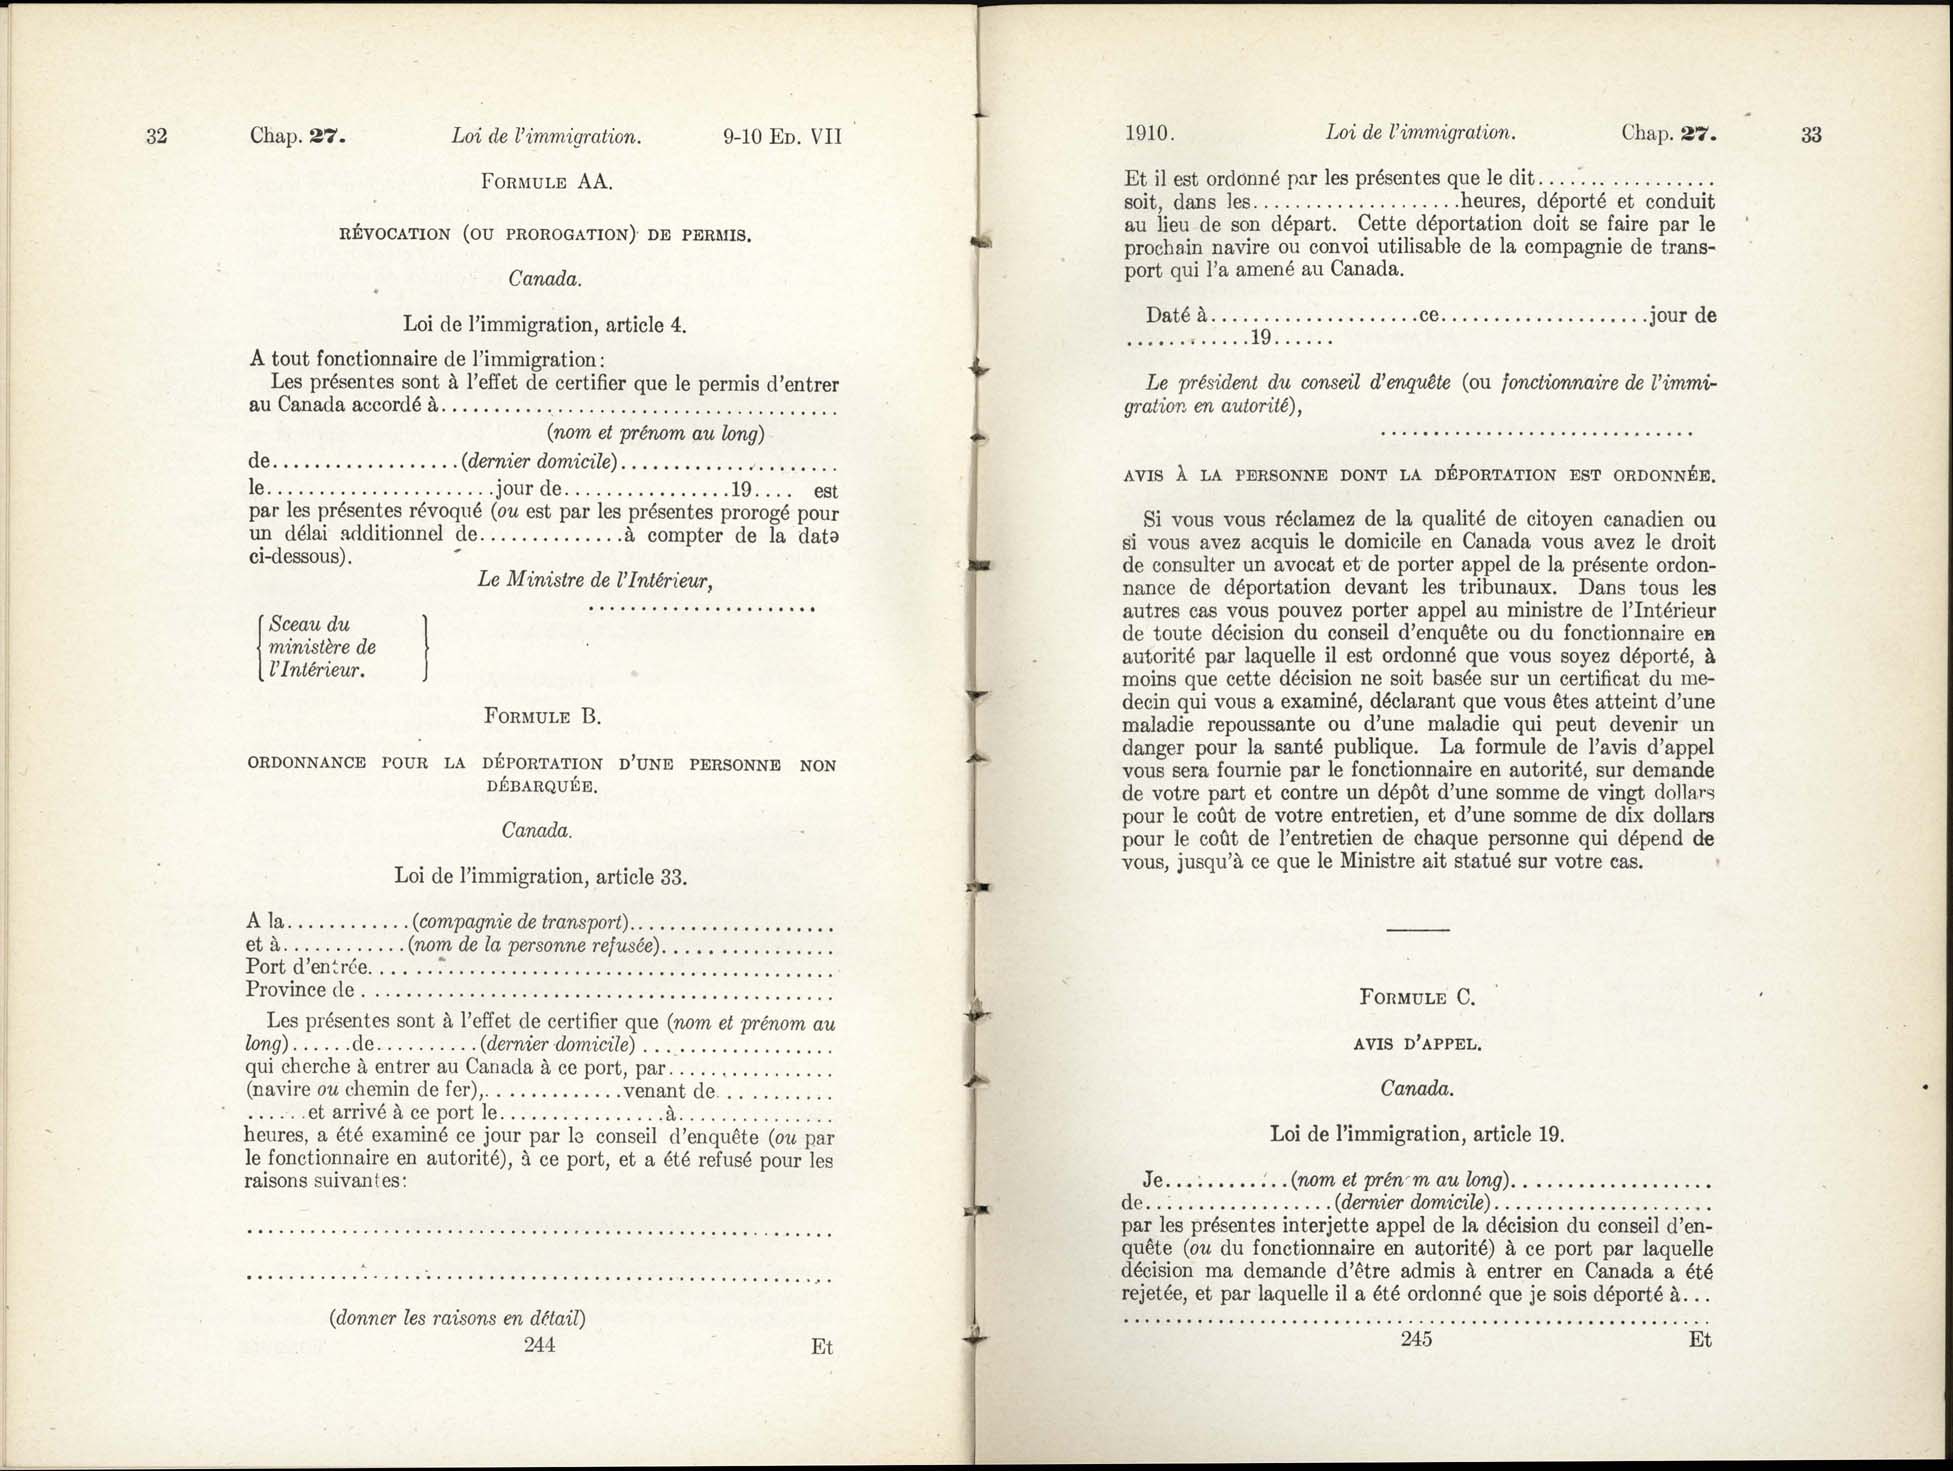 Chap 27 Page 244, 245 L’Acte d’immigration, 1910